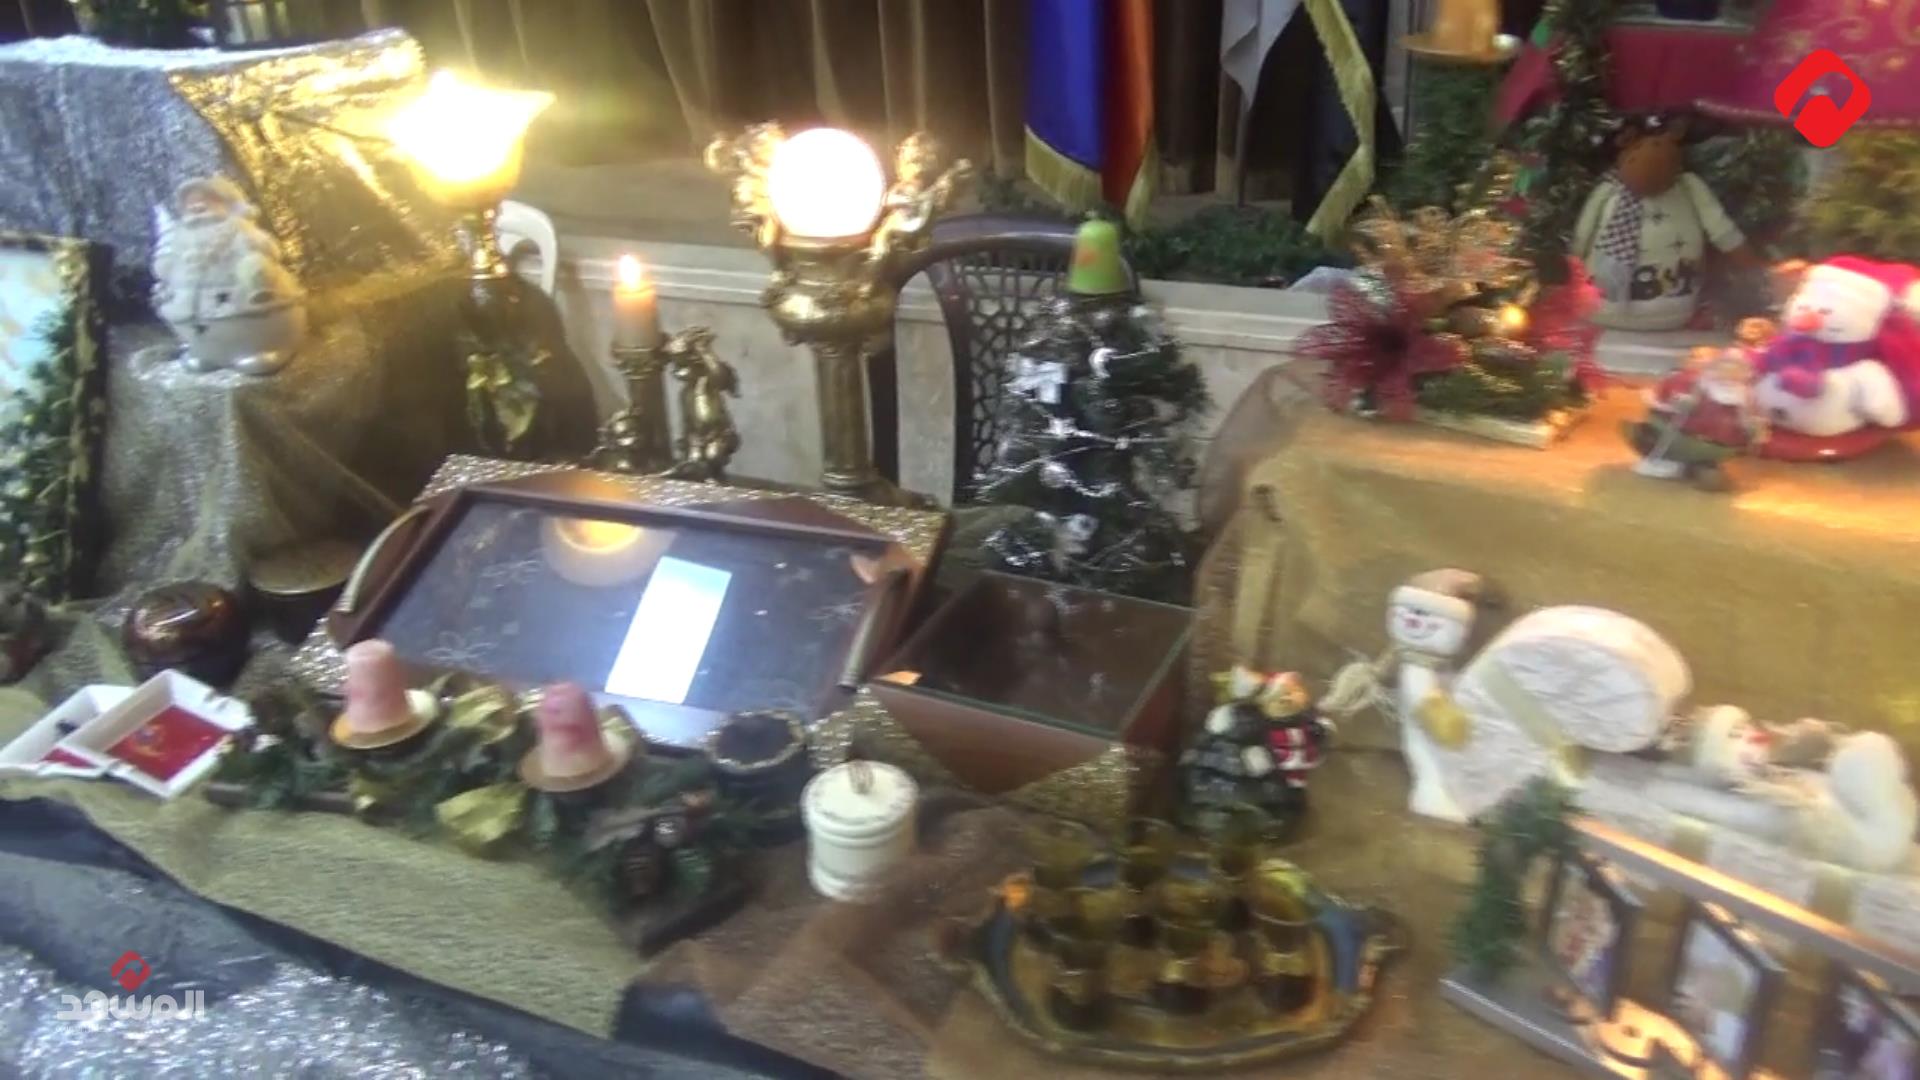 دعم المرأة الحلبية المنتجة في معرض الأعمال اليدوية (فيديو)